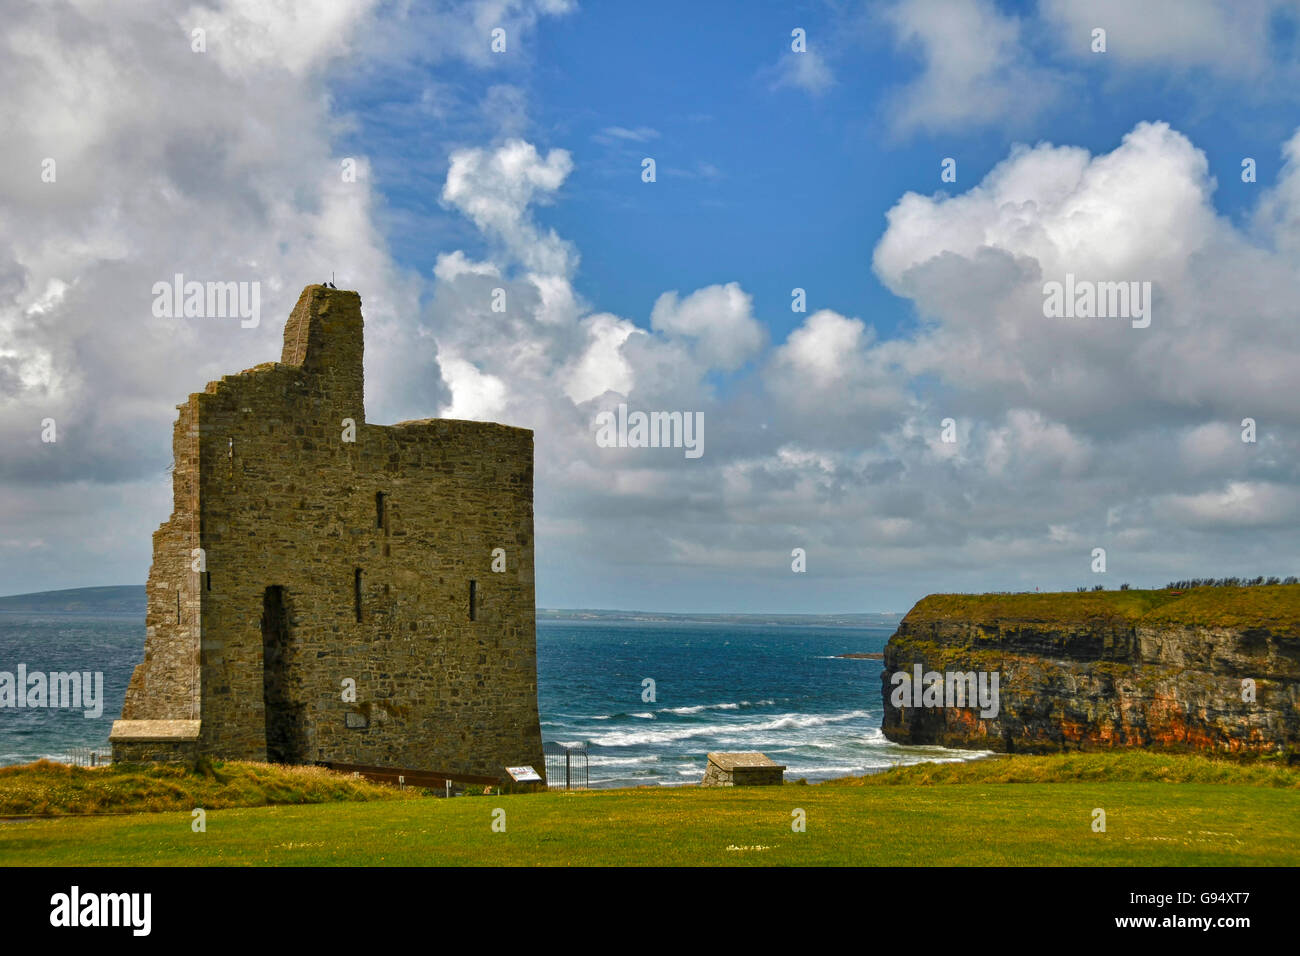 Ballybunion castle, Ballybunion, County Kerry, Ireland Stock Photo